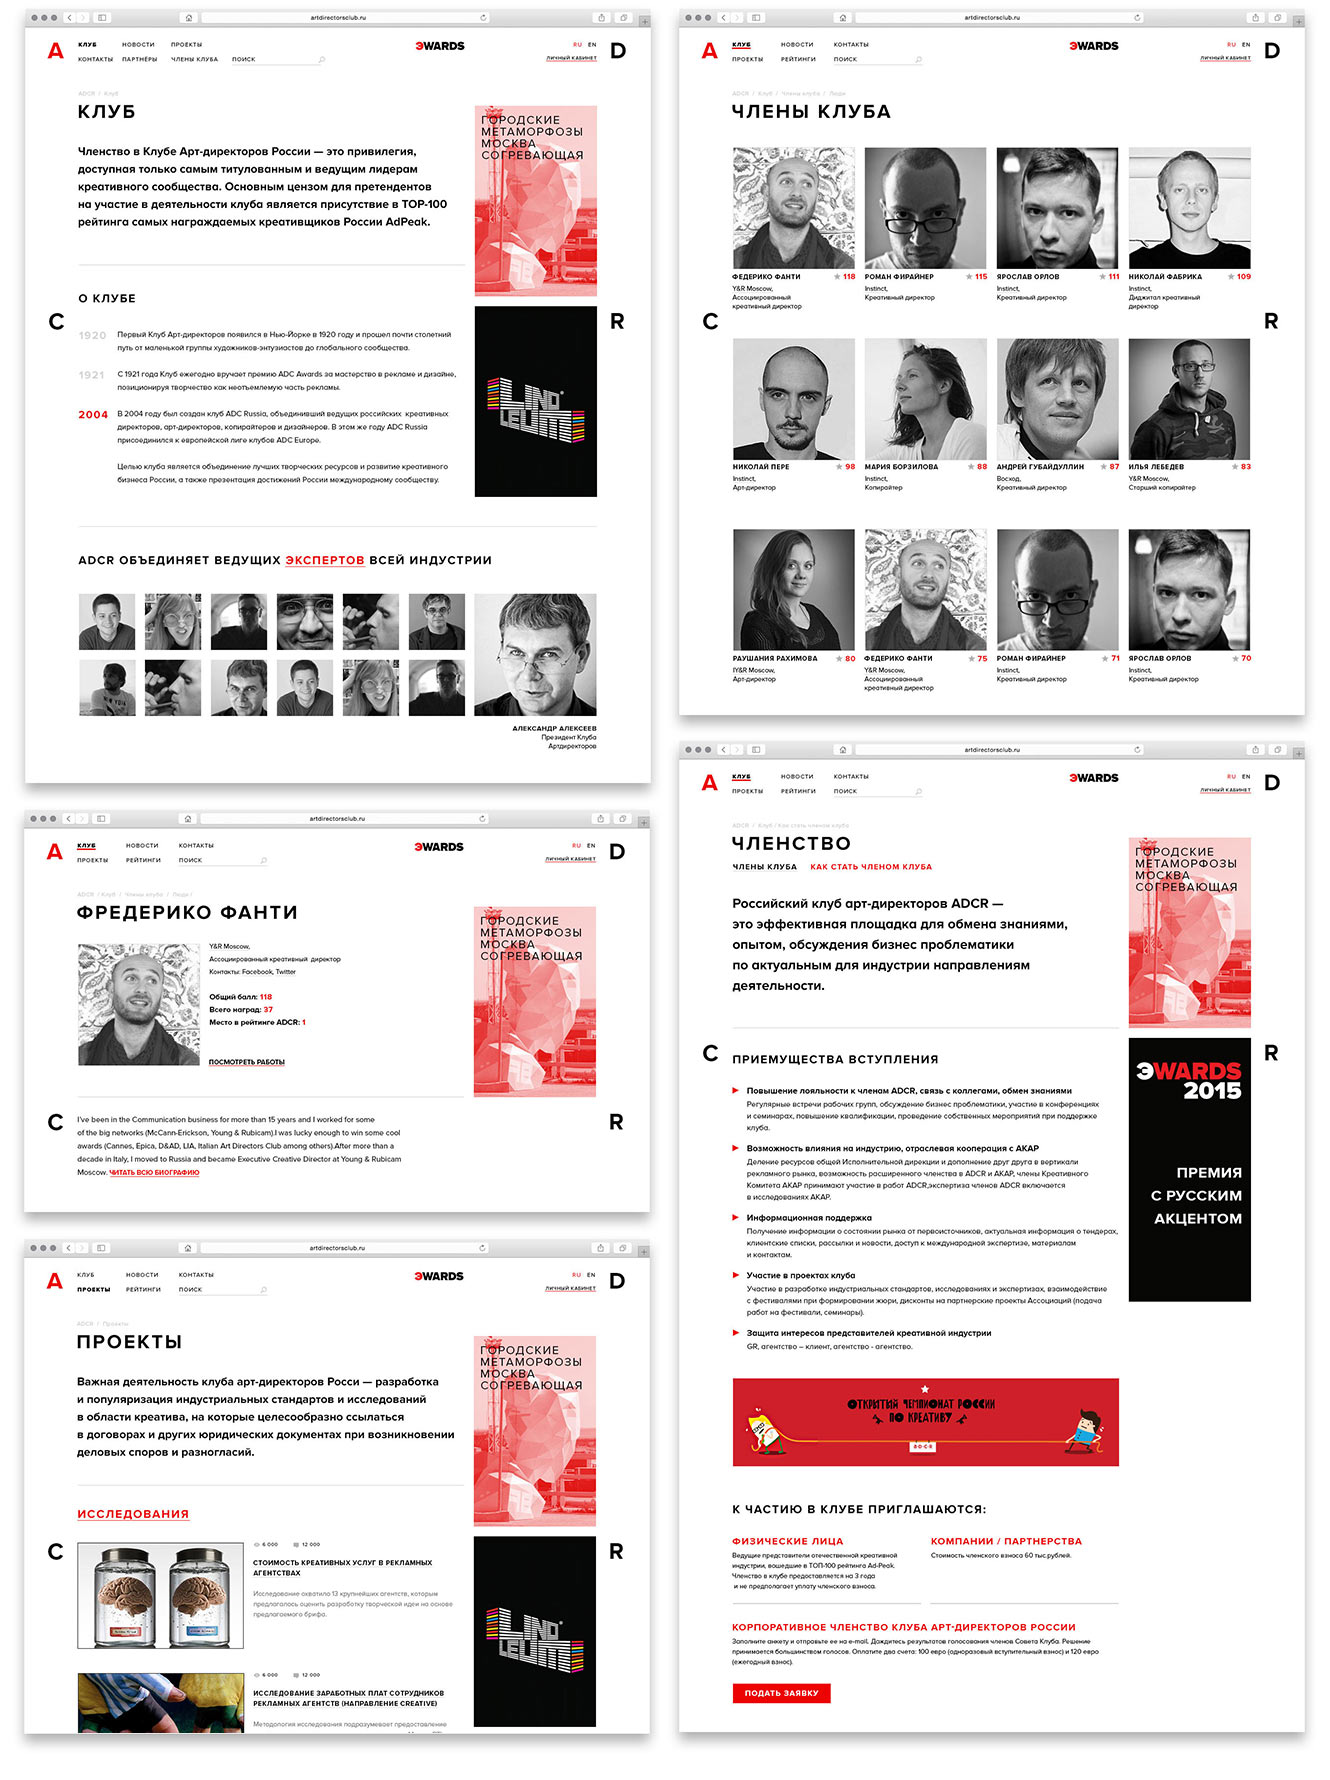 Дизайн сайта для Клуба арт-директоров России